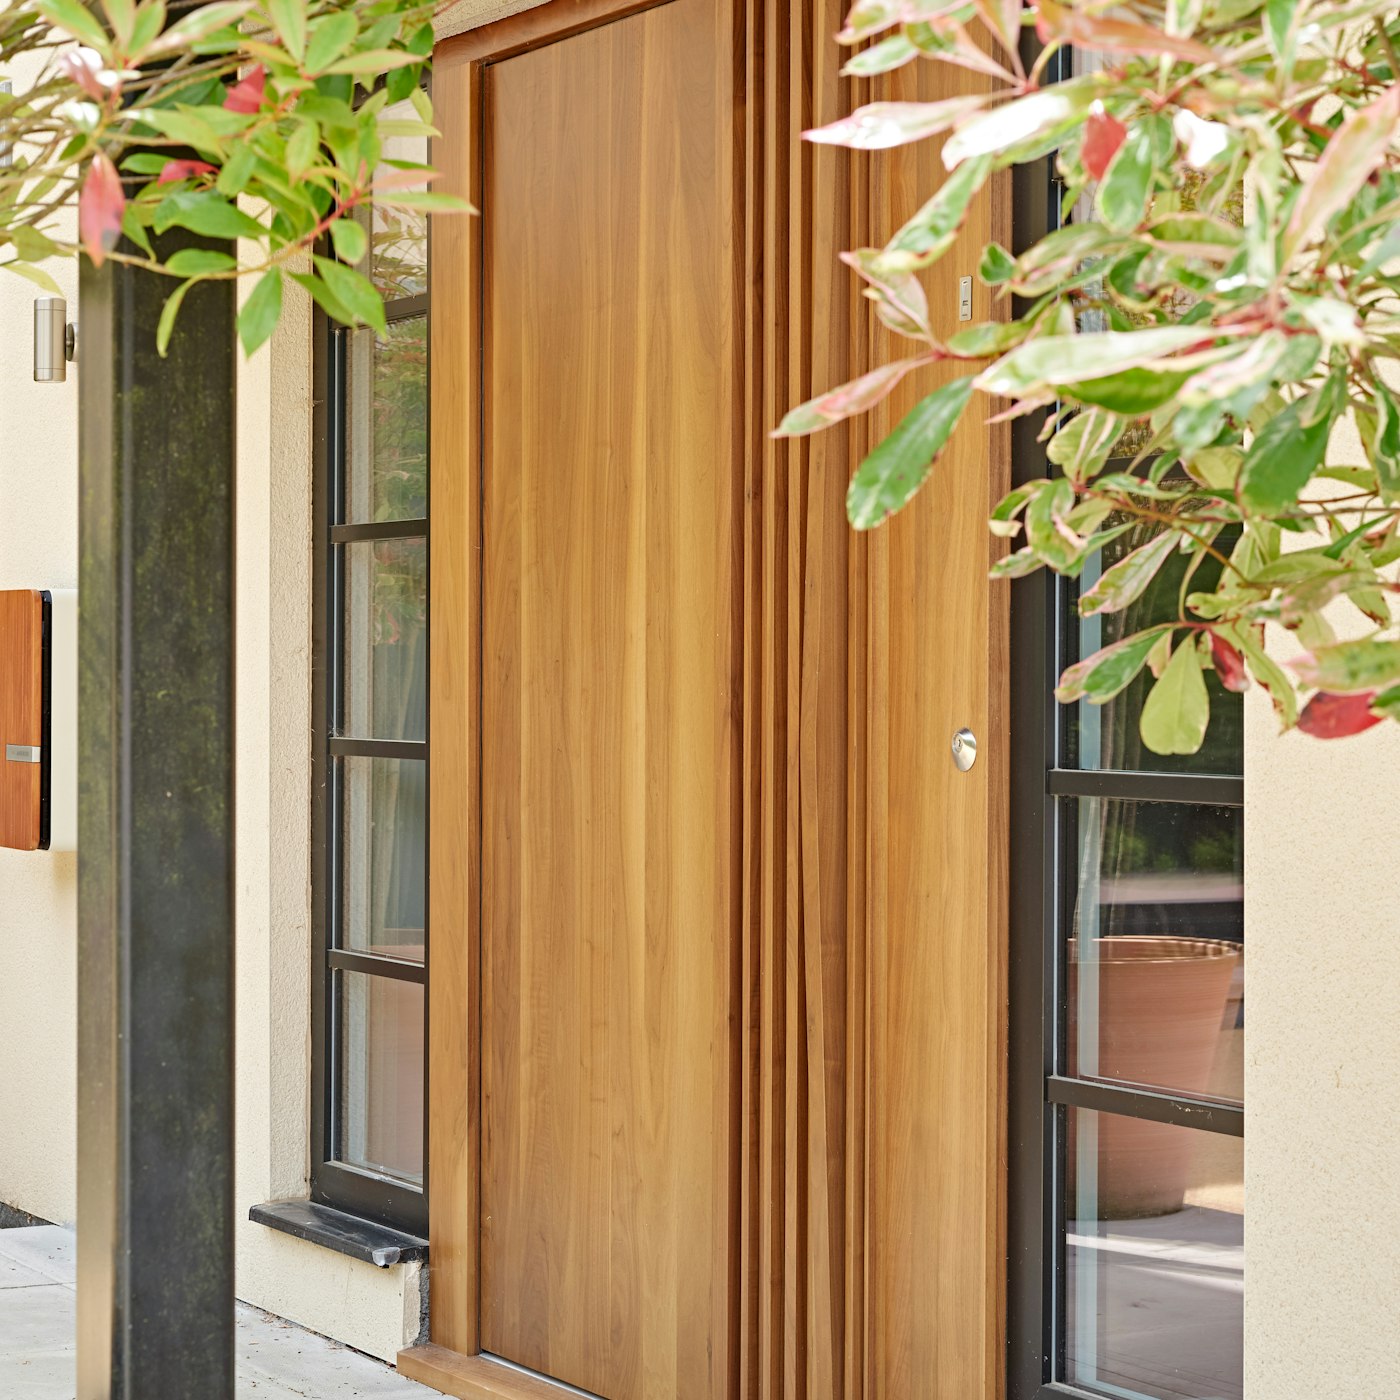 wooden bari handle on door